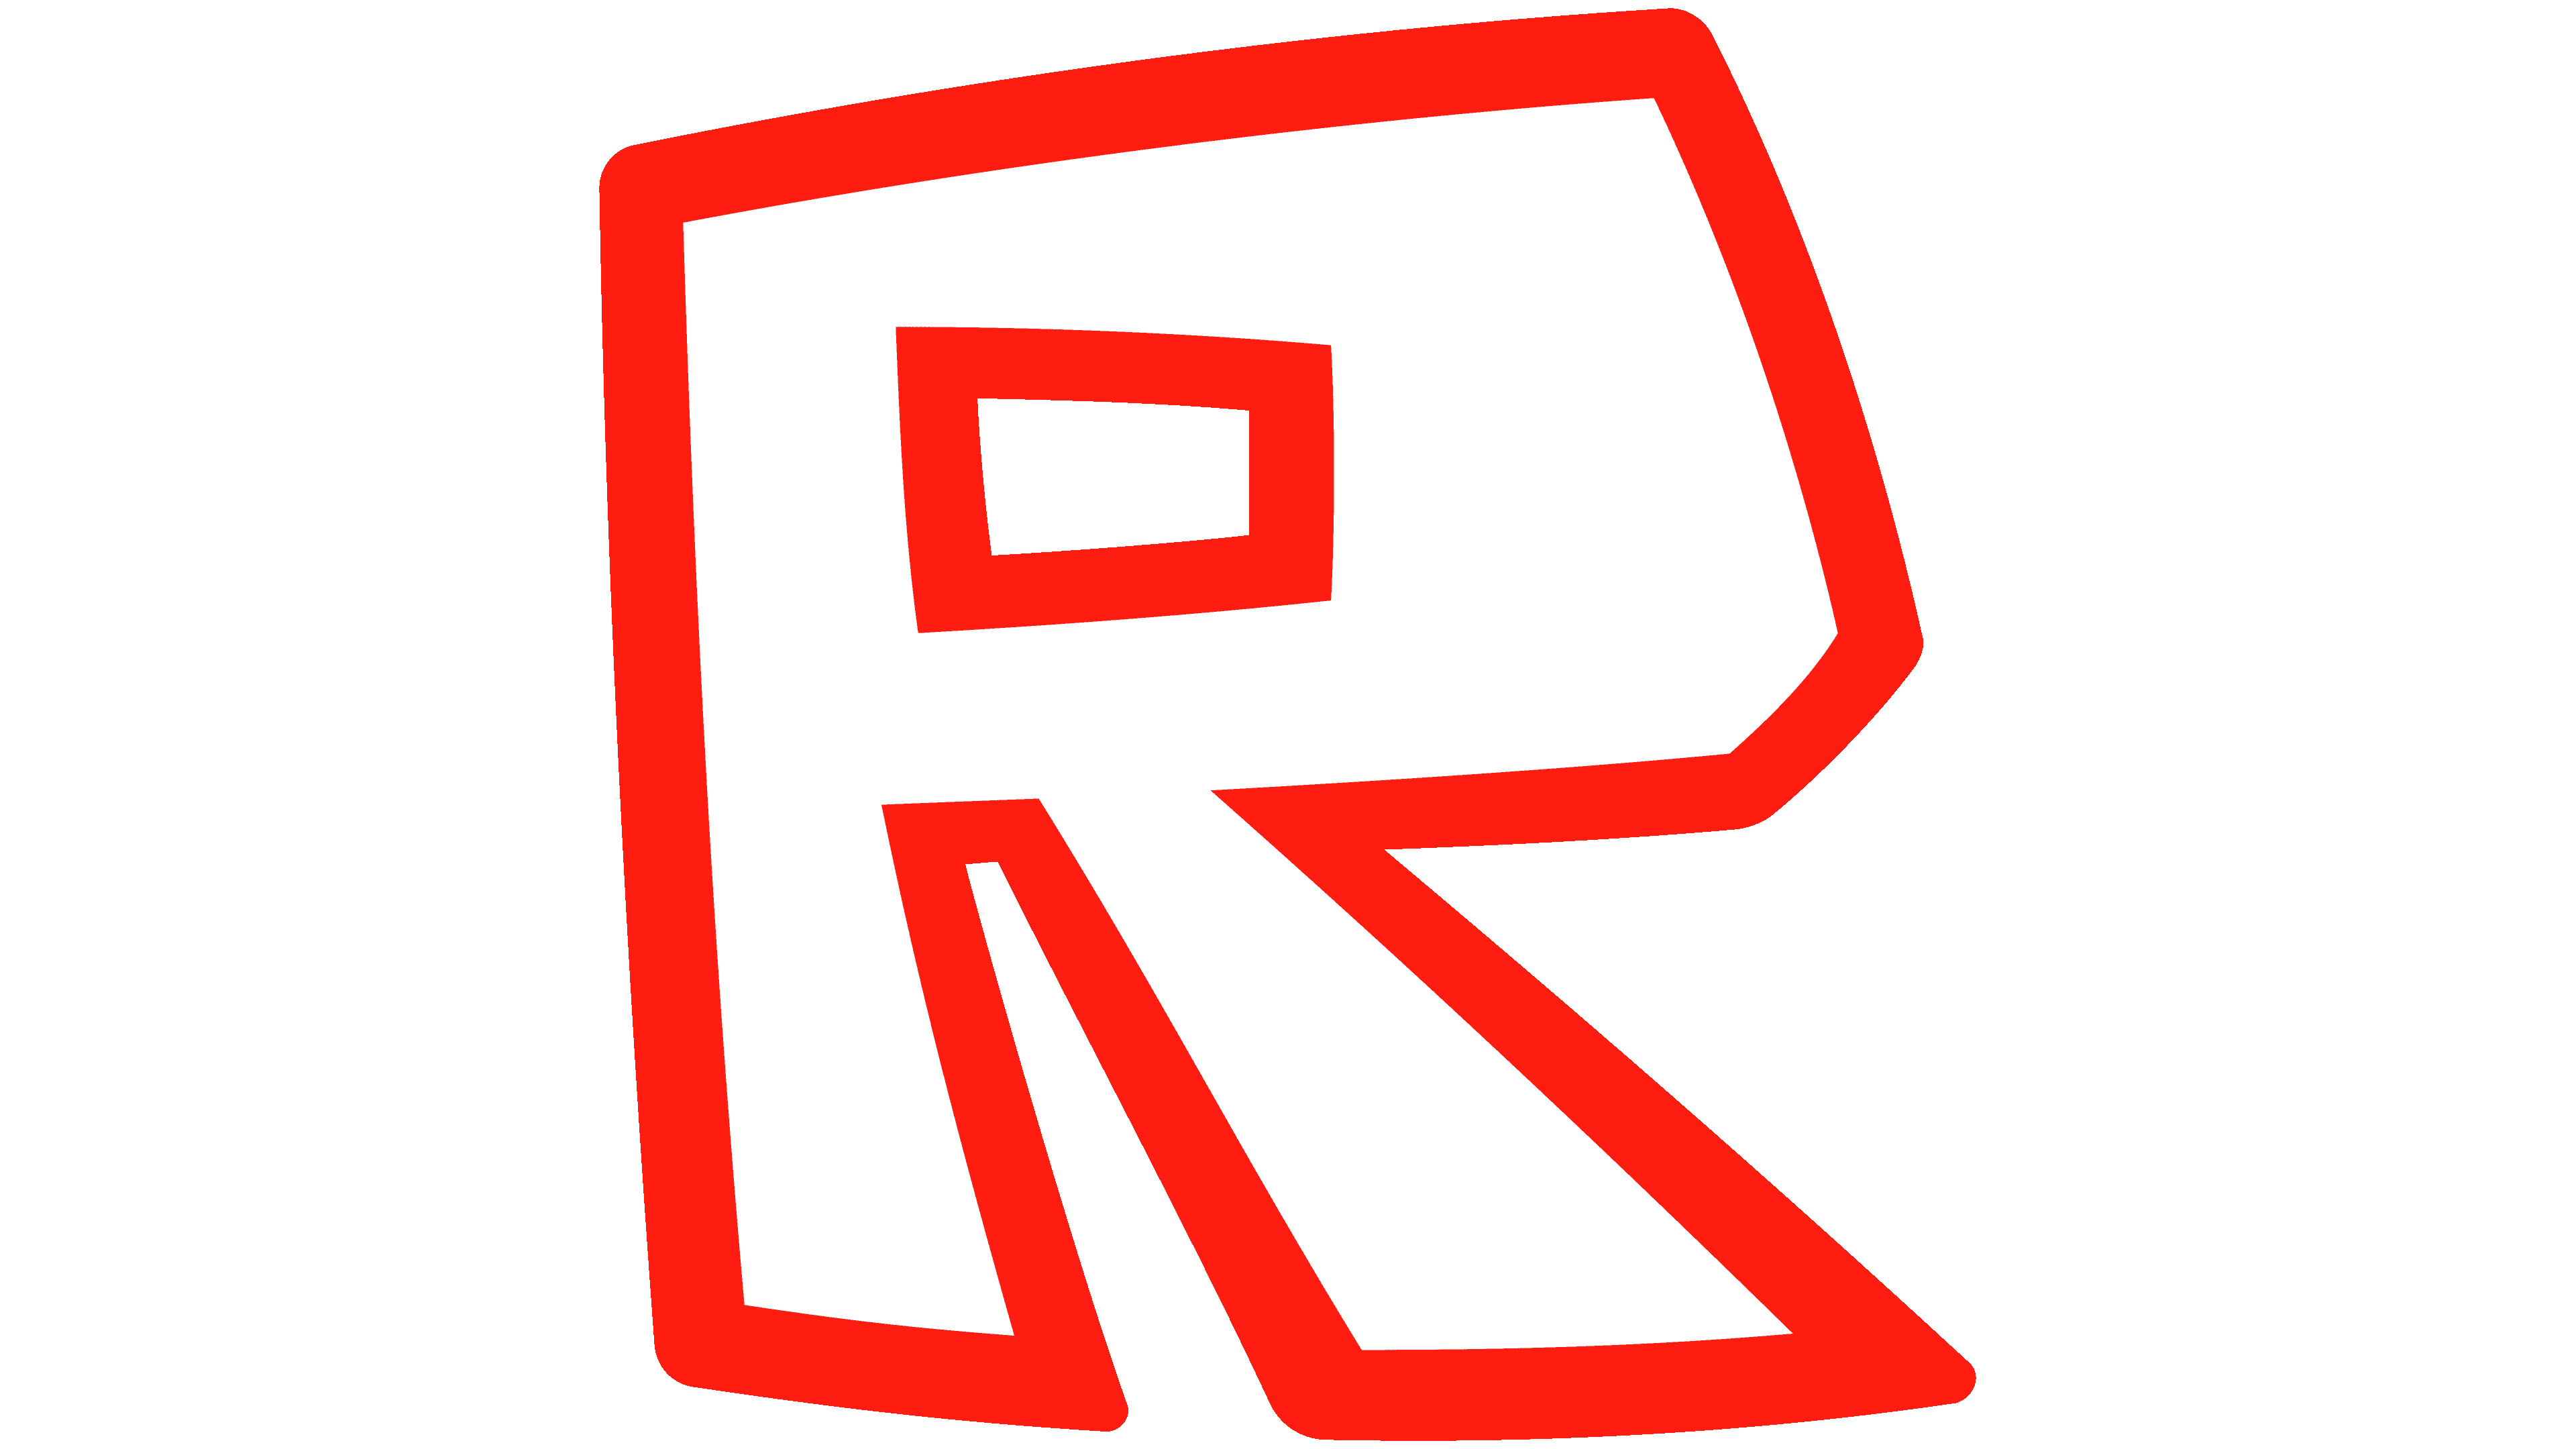 Roblox Logo Redesign